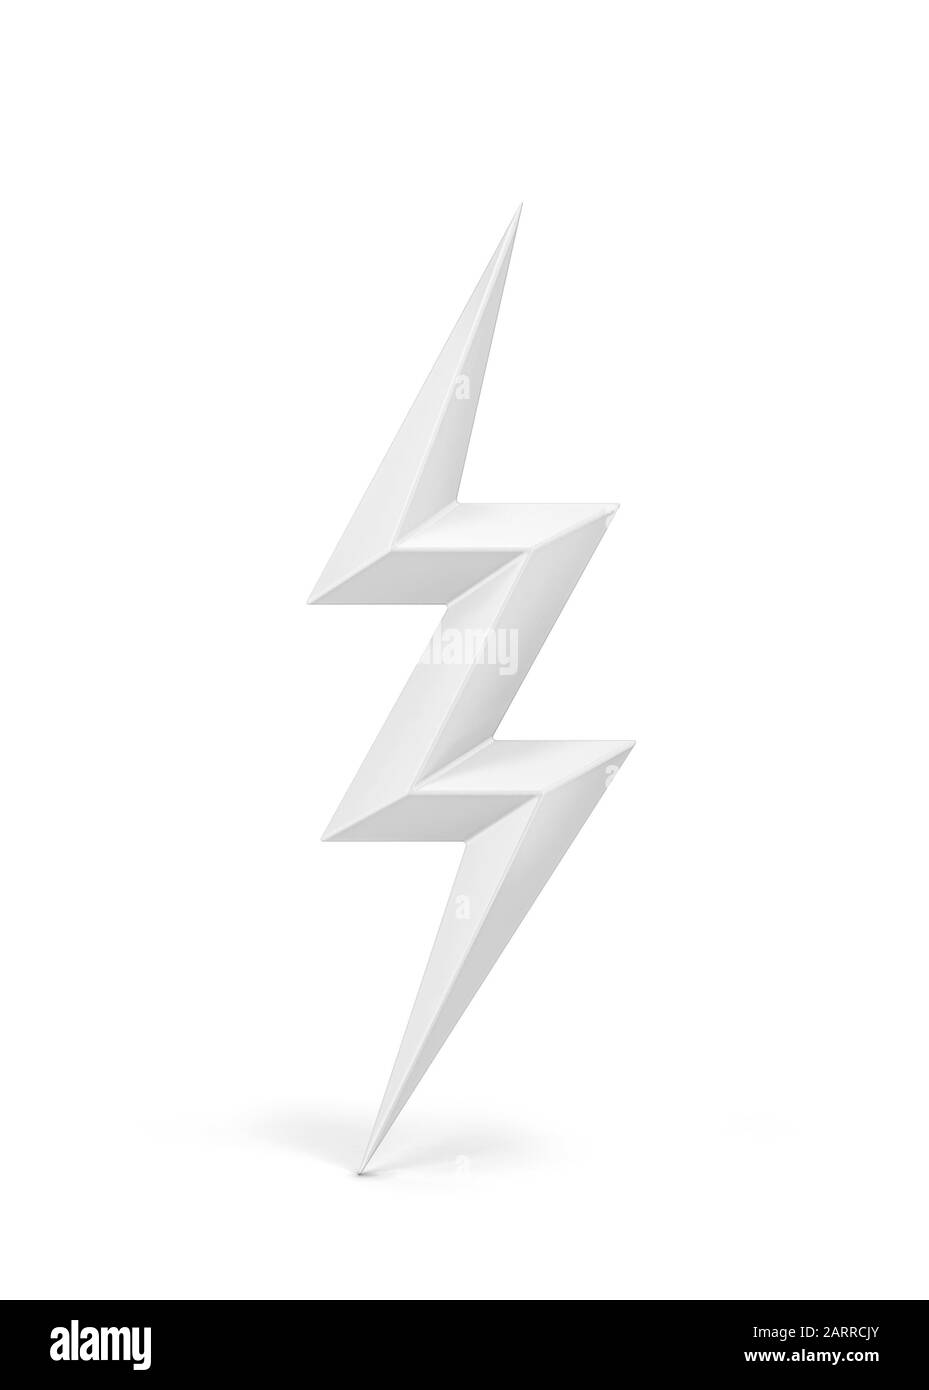 Lightning bolt symbol. 3d illustration isolated on white background Stock Photo